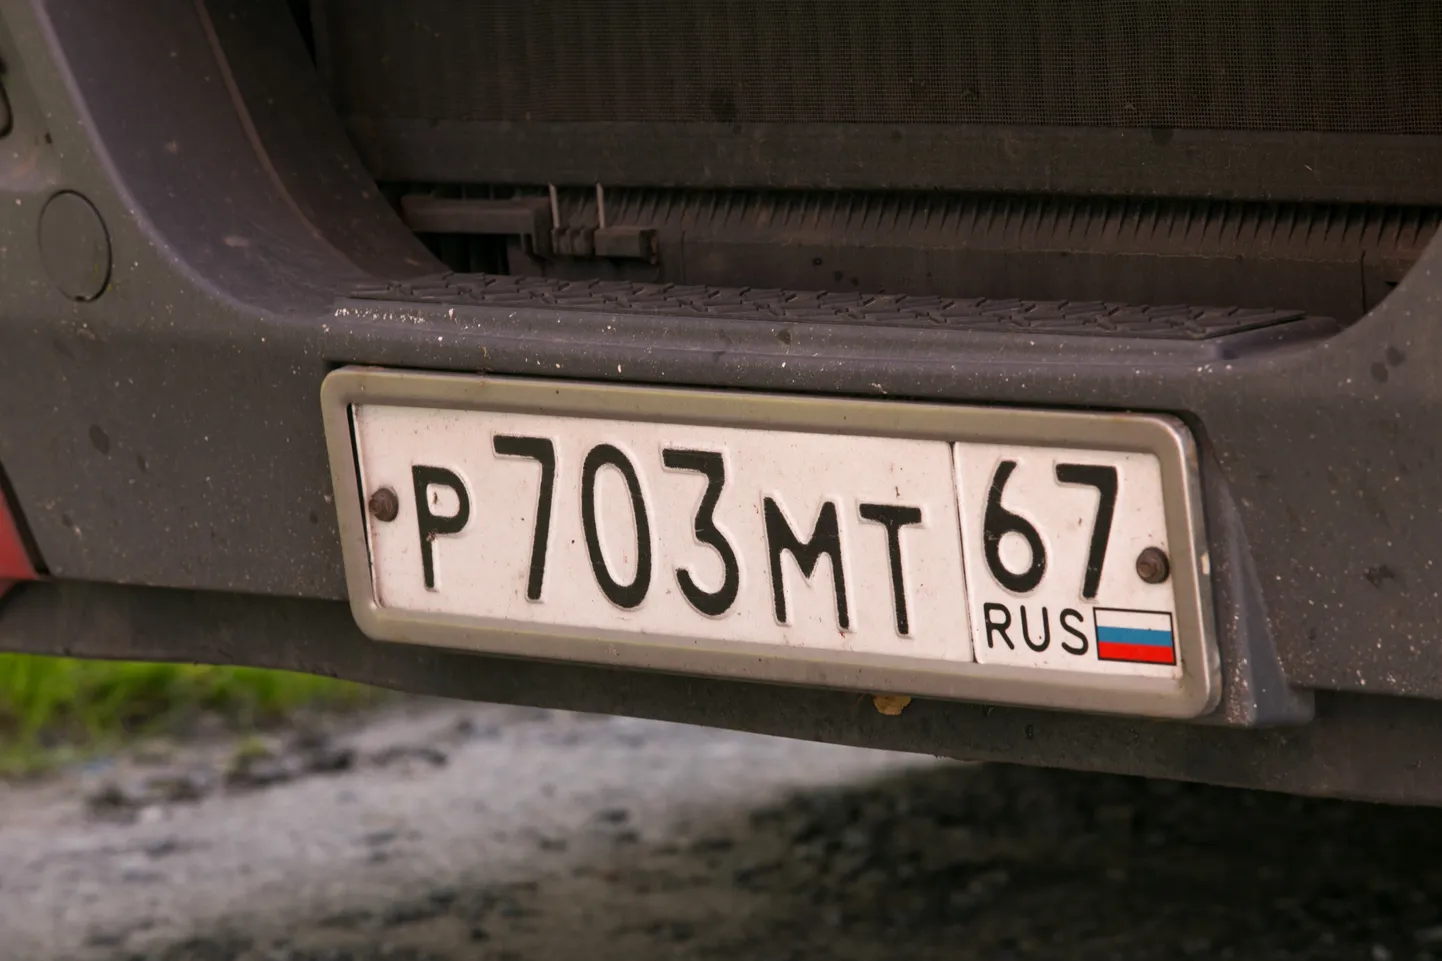 Vene numbrimärgiga veoauto.